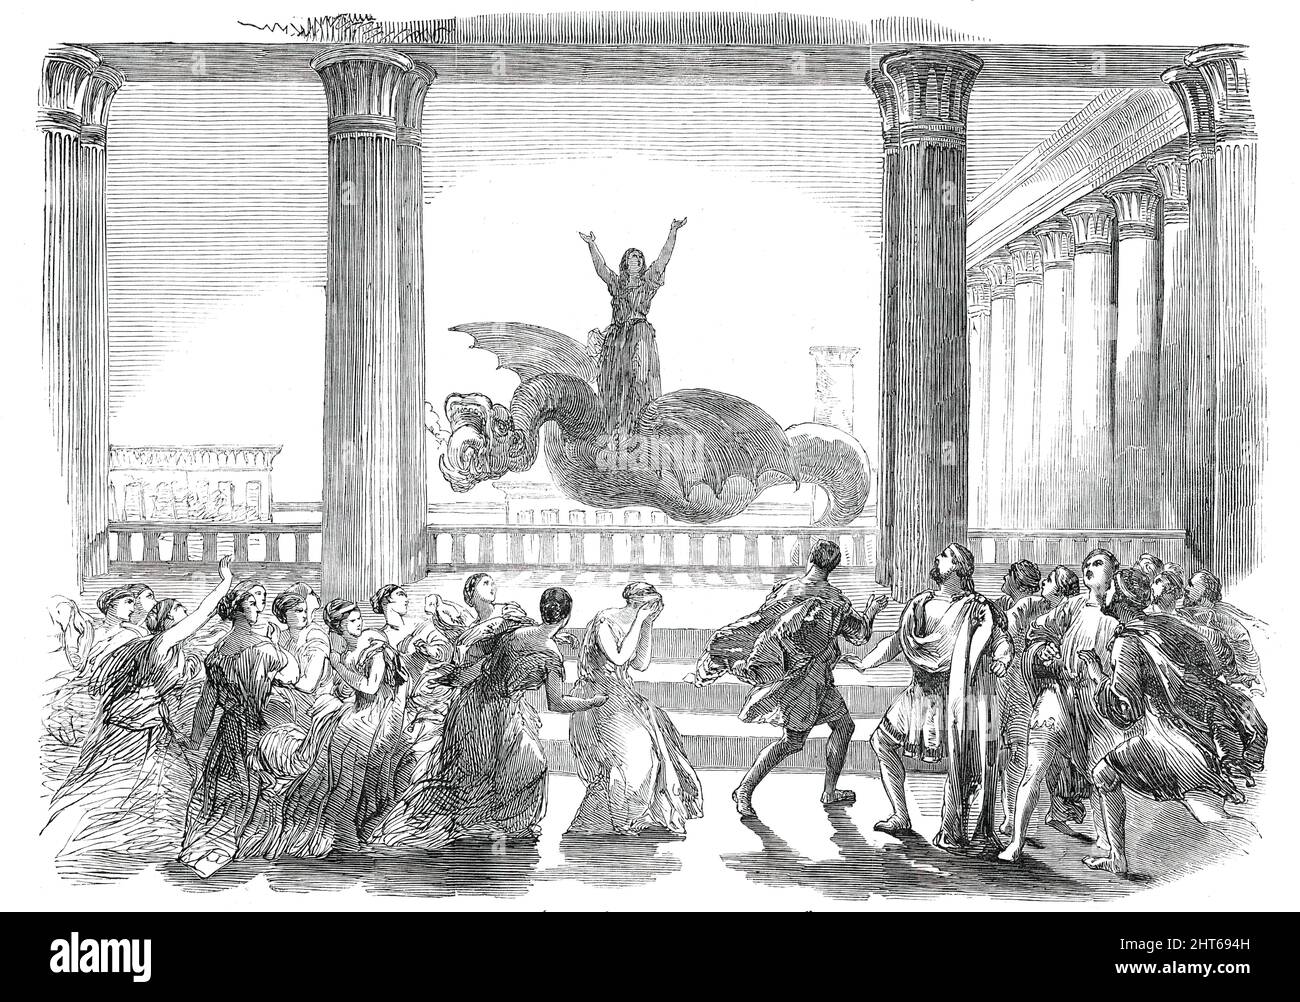 Szene (die letzte) aus der Oper von "Medea", 1850. Die Londoner Produktion von Simon Mayr's "Medea in Corinto", der Titelrolle von Teresa Parodi: "...Rache vollbracht, bestieg Medea ein von feurigen Drachen gezogenes Auto und fliegt mit Aegeus nach Athen...Alle gewalttätigen Stimmungsübergänge wurden wirklich und mit der erstaunlichsten Wirkung wiedergegeben. Die Flüche der Zauberin verwelken, ihr mütterliches Gefühl ließ das Publikum vor Sympathie begeistern, und ihr letzter Triumph über ihre Feinde... wo sie ihren feurigen Wagen bestieg, wurde in der großartigsten Geistigkeit imag dargestellt Stockfoto